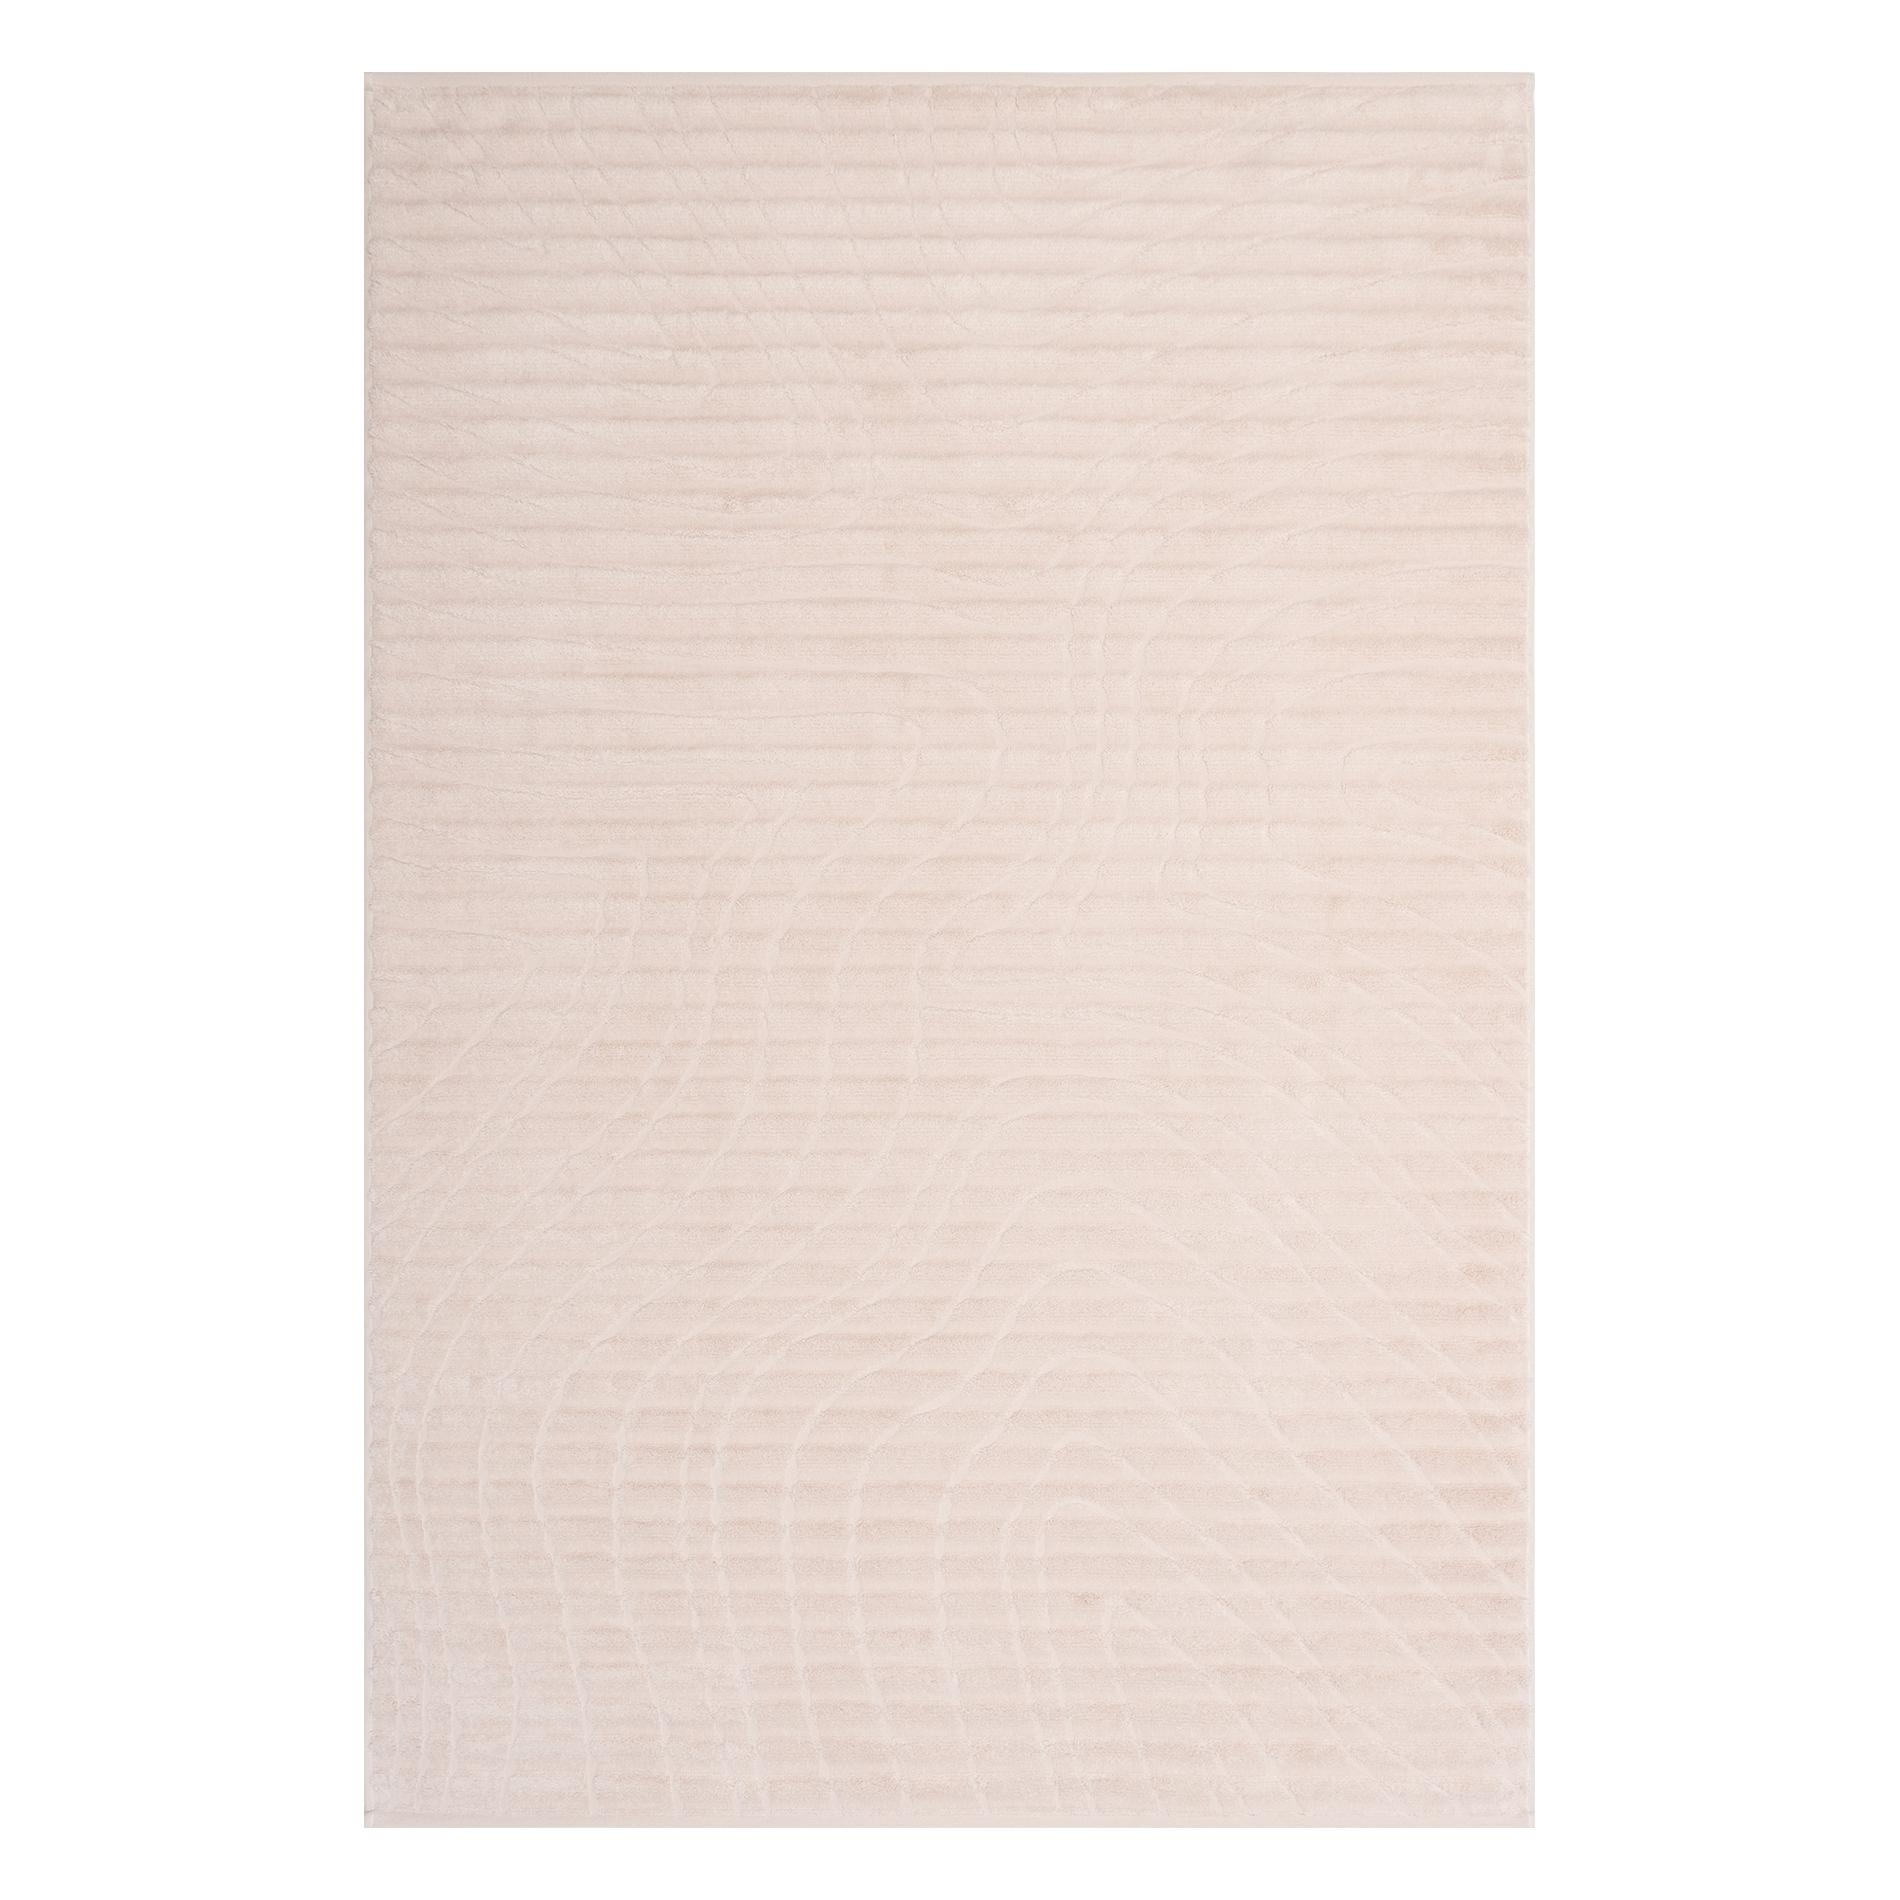 Махровое полотенце Cleanelly Albero bianco молочное 100х150 см полотенце тоскана песочный р 100х150